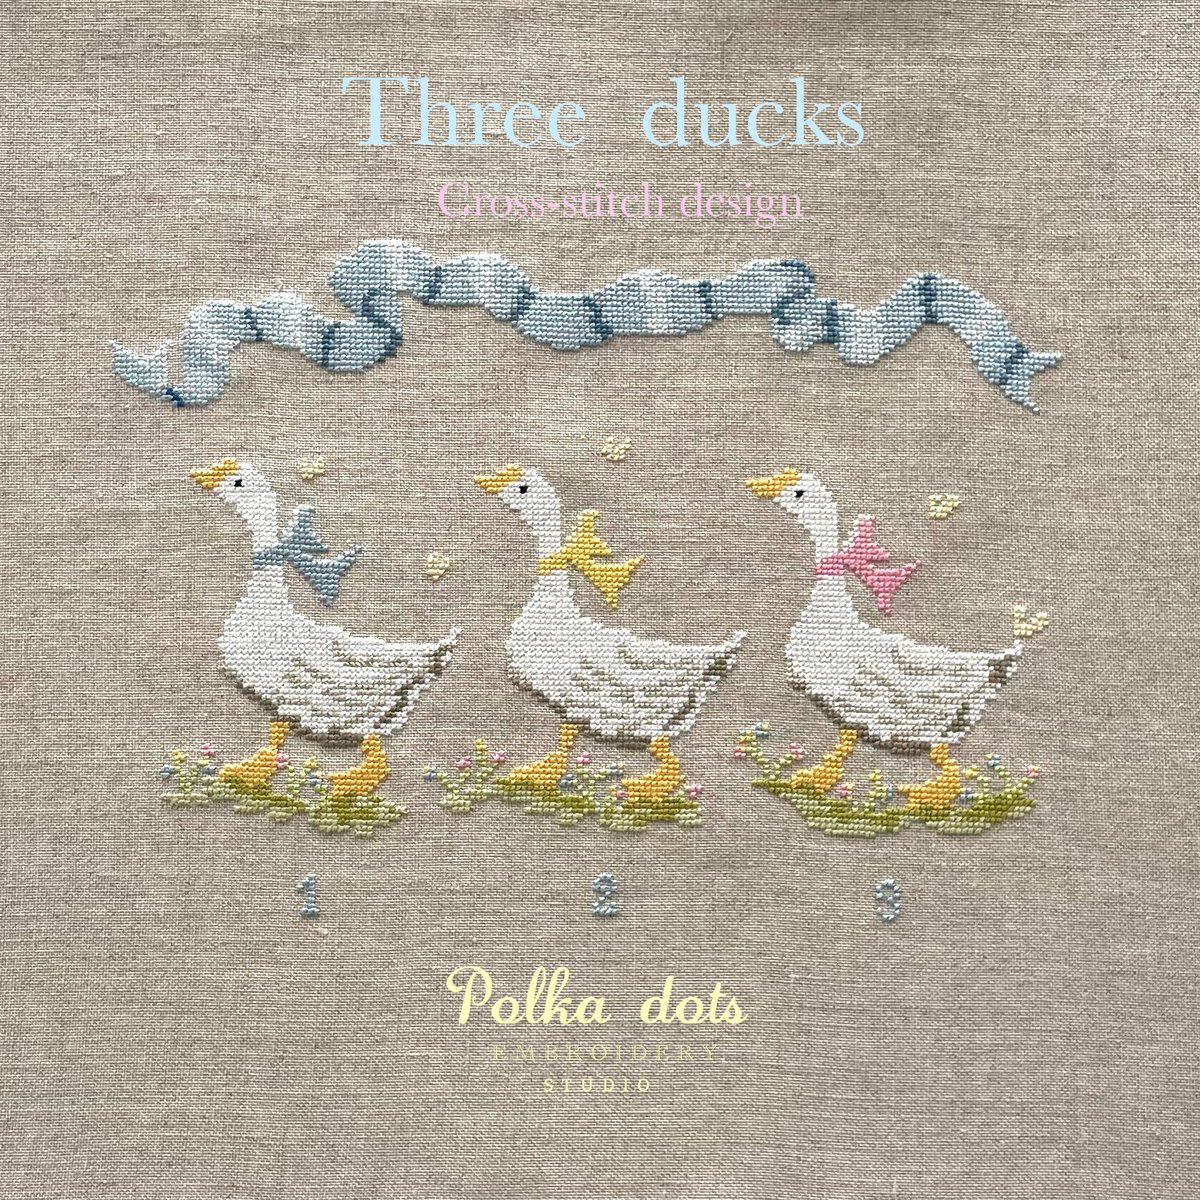 クロスステッチ図案 Three ducks | Polka dots Embroidery S...